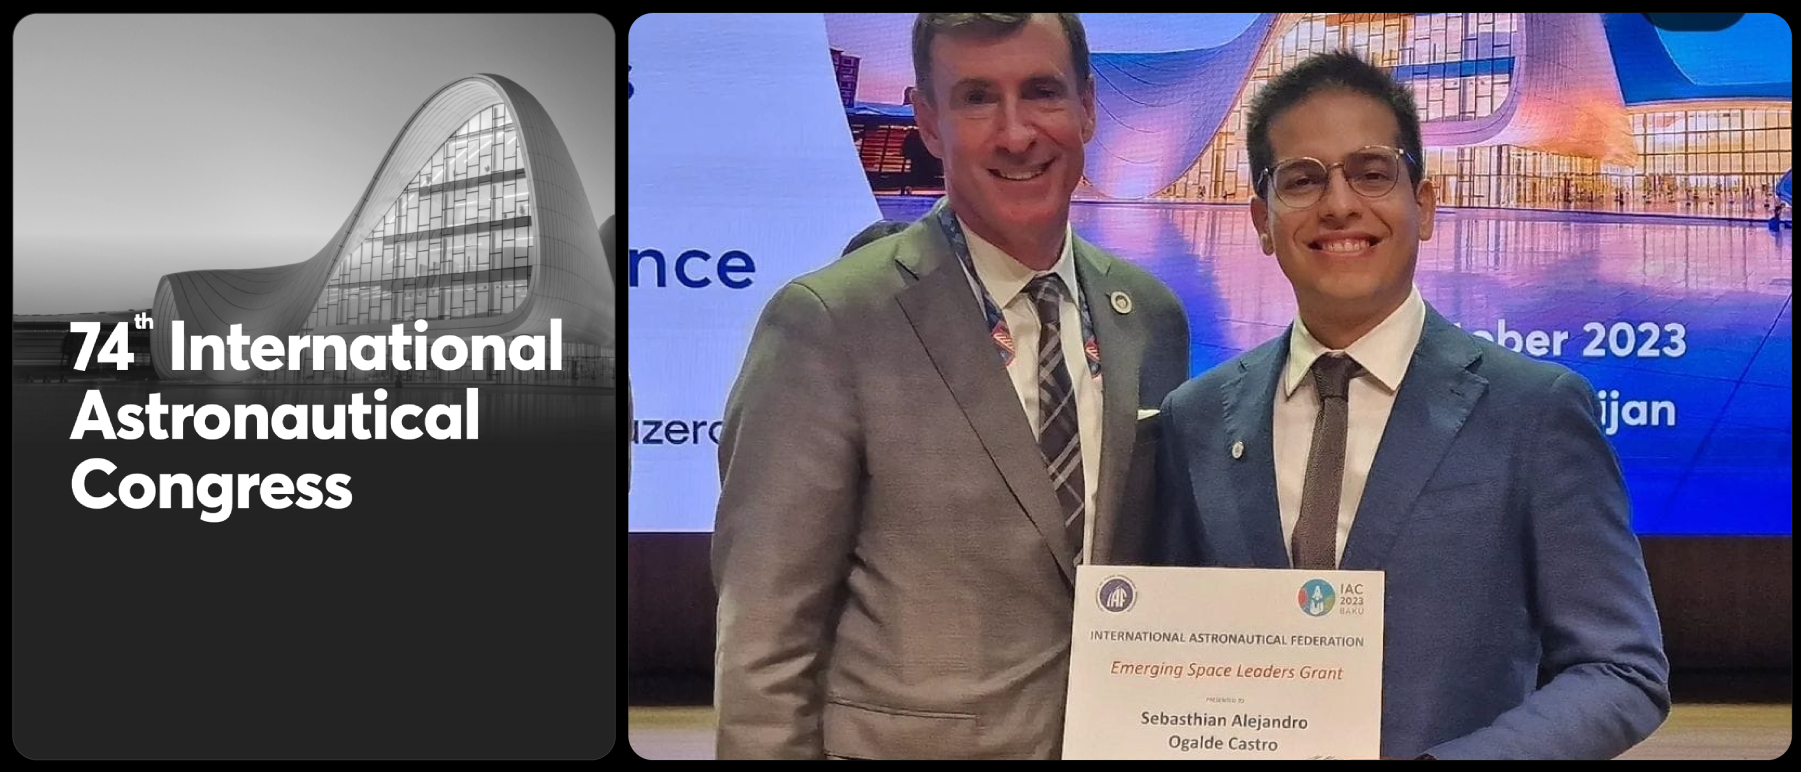 [6 Octubre 2023] Nuestro CEO, Sebasthian Ogalde Castro, recibe el premio IAF Emerging Space Leaders durante el 74th International Astronautical Congress, en Baku, Azerbaijan.